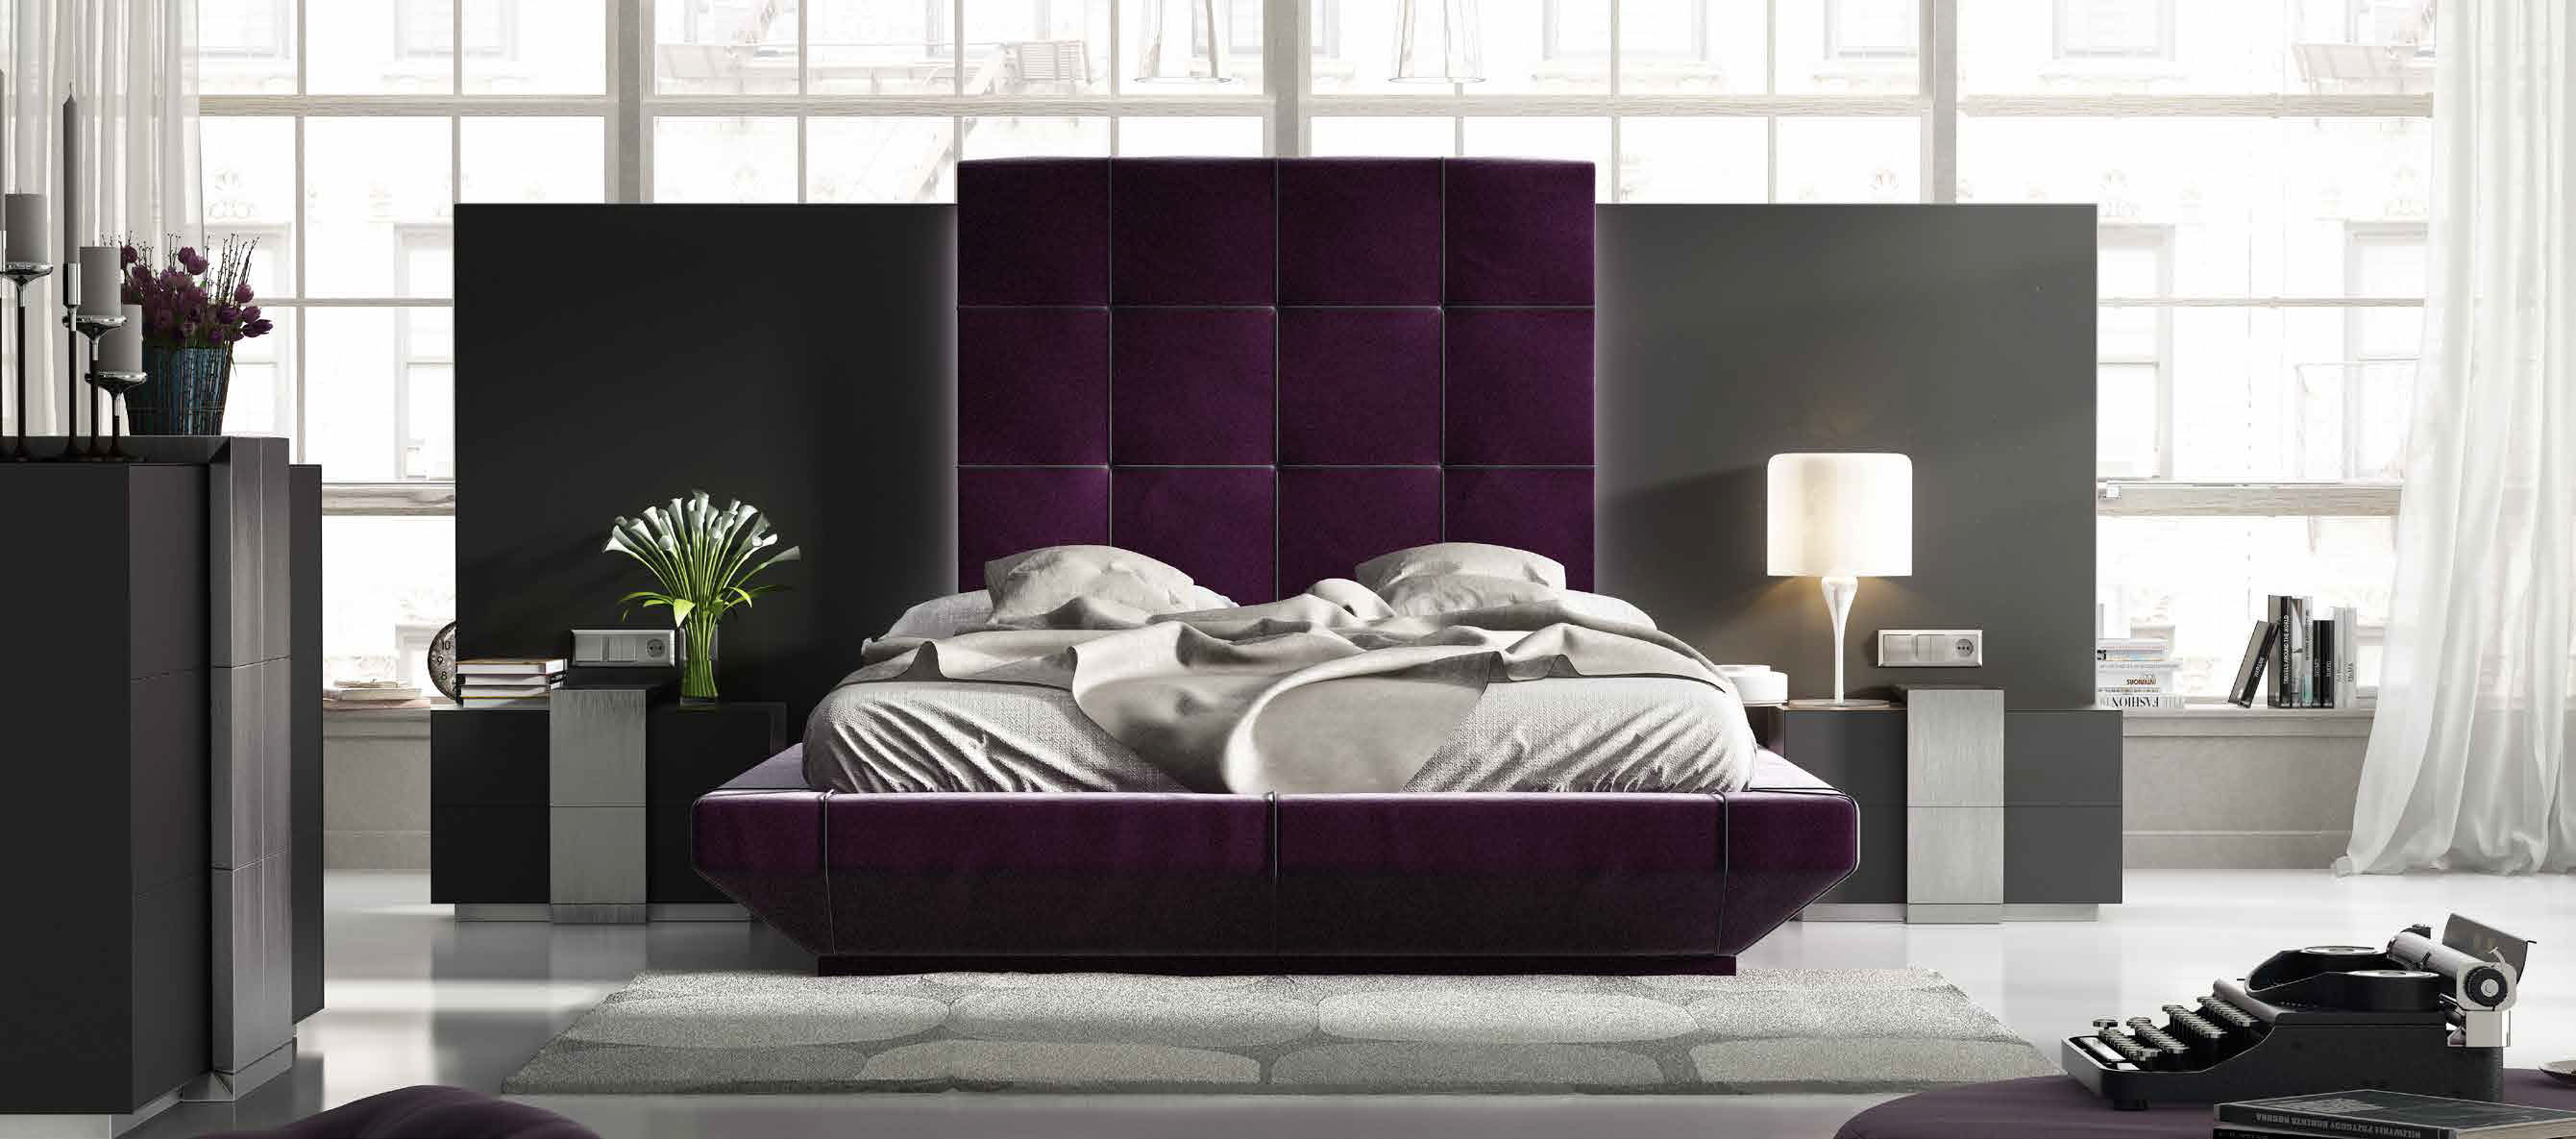 Brands Franco Furniture Avanty Bedrooms, Spain DOR 01